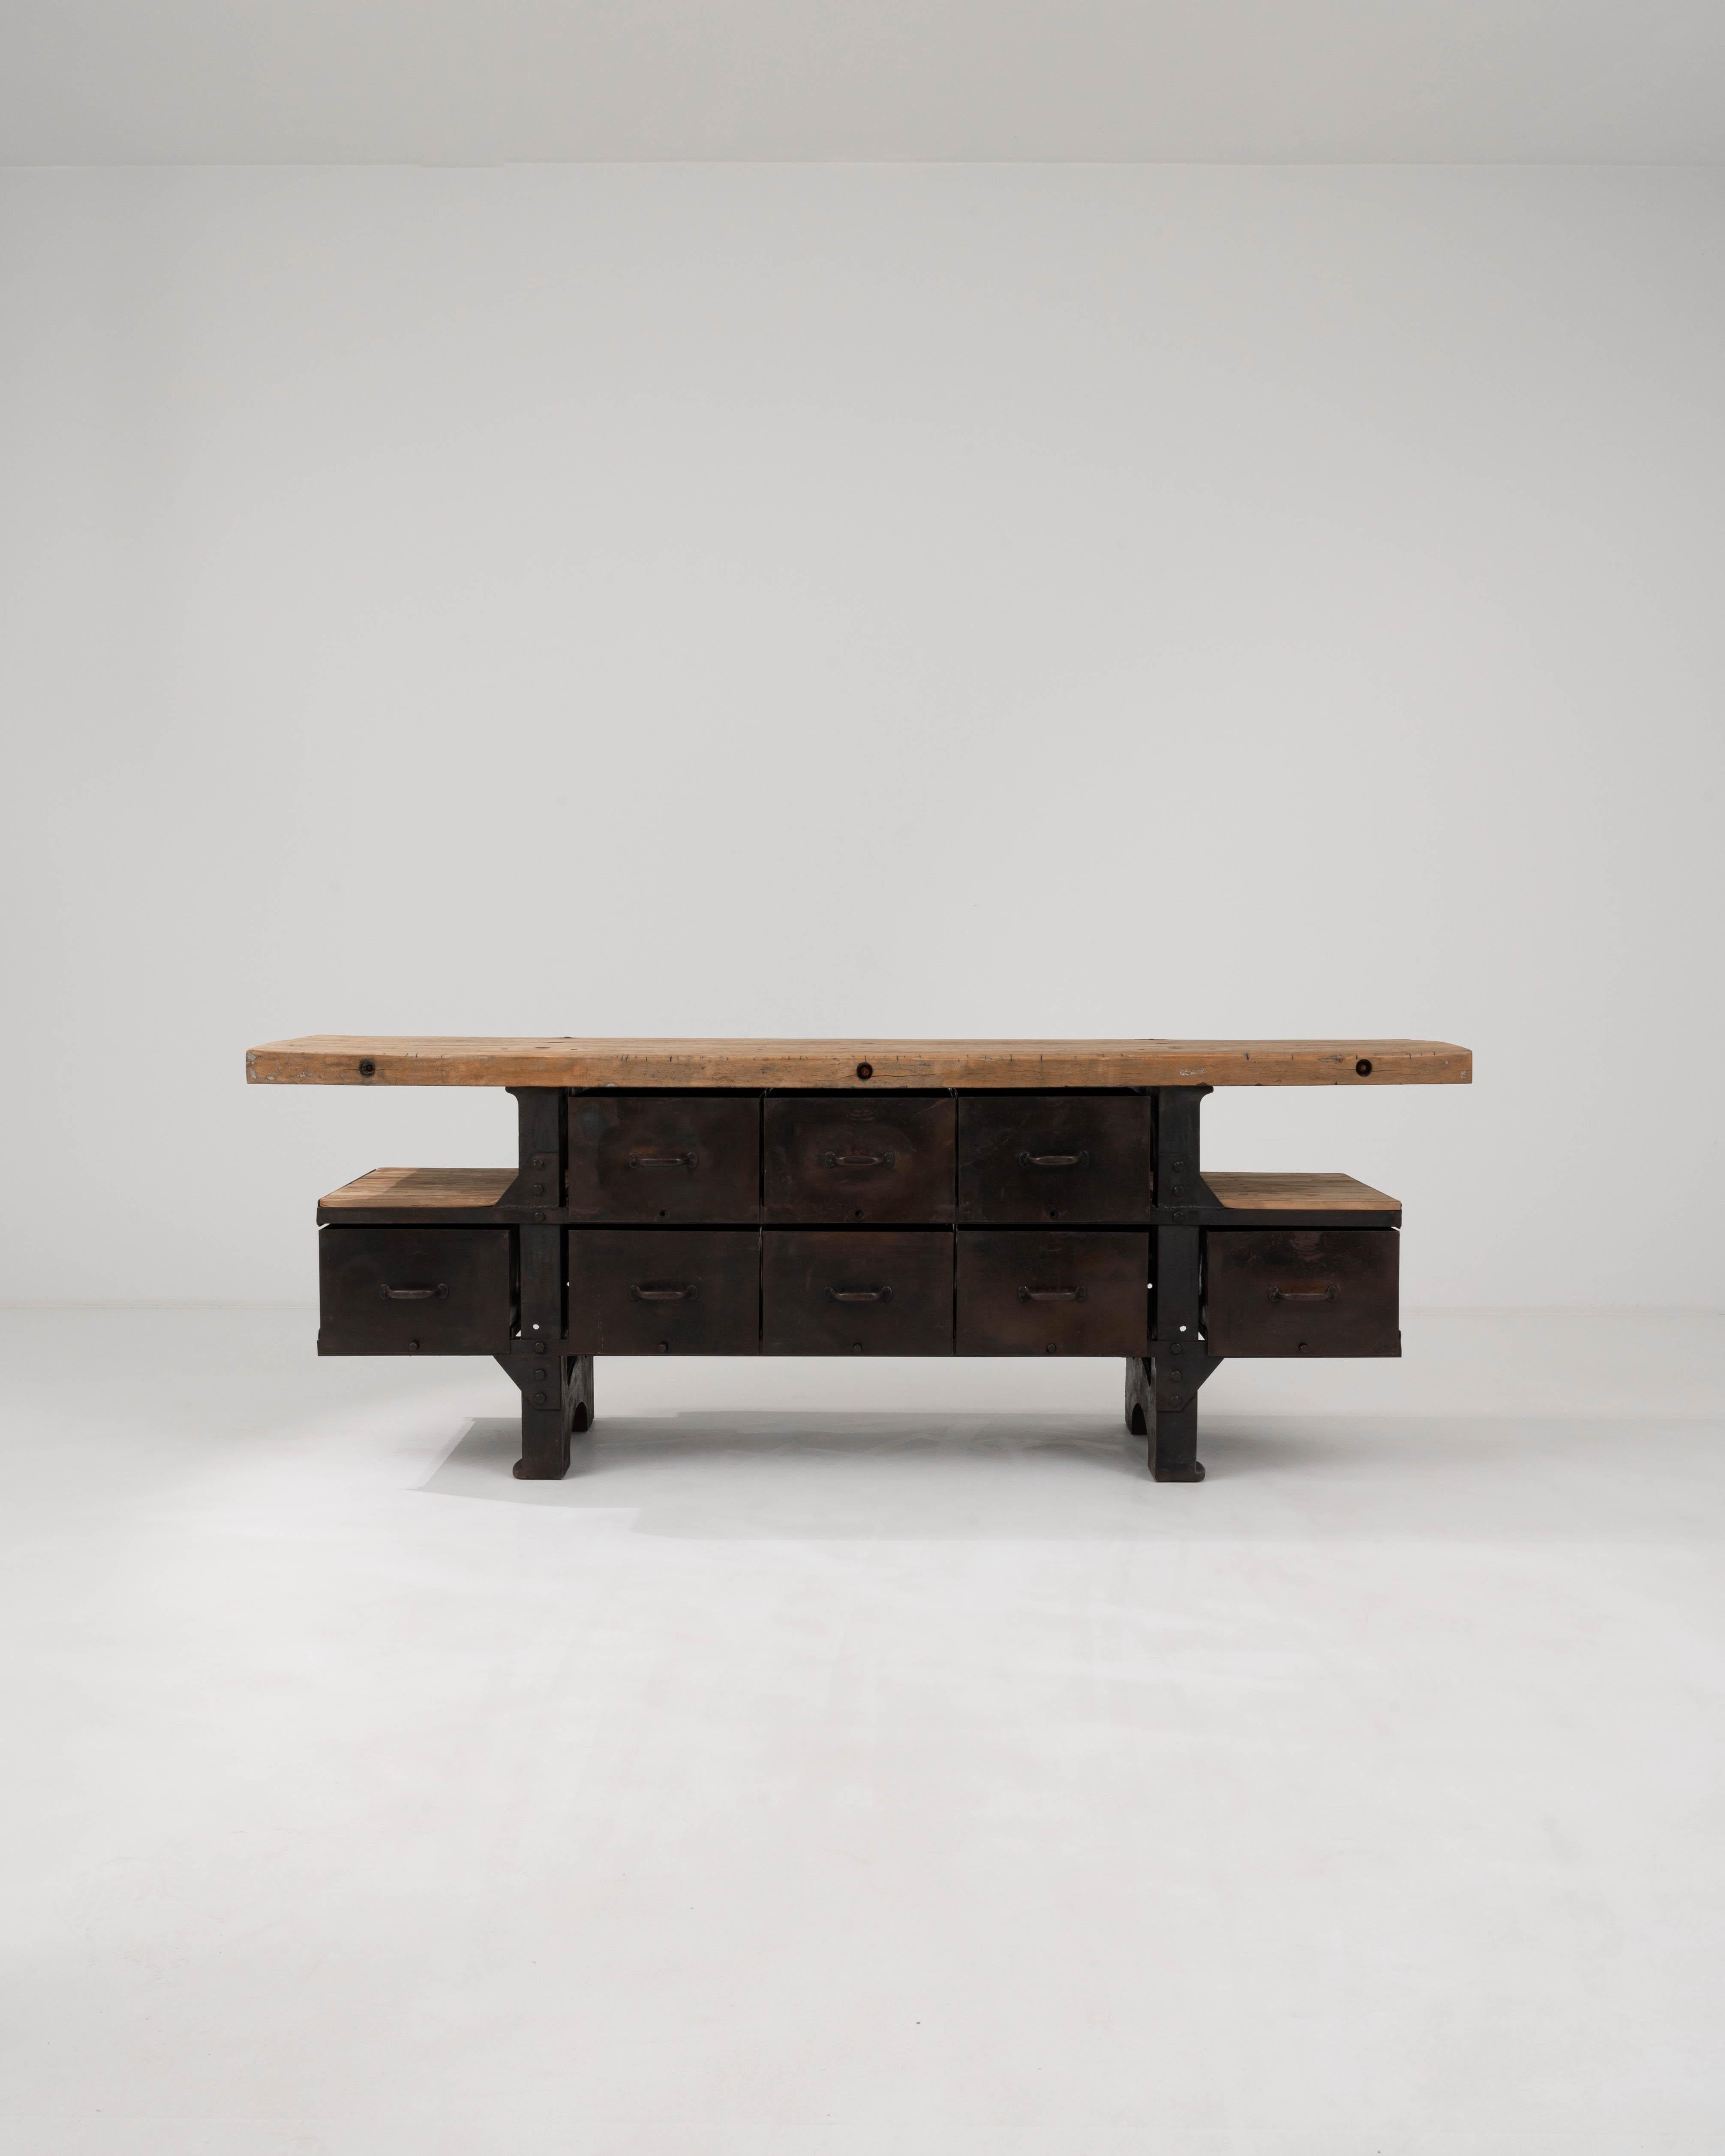 Dieser belgische Industrietisch aus dem 20. Jahrhundert ist eine robuste Ergänzung für jeden Raum, der die rohe, ungeschliffene Ästhetik des Industriedesigns zu schätzen weiß. Die massive Holztischplatte, die mit der Zeit und dem Gebrauch abgenutzt